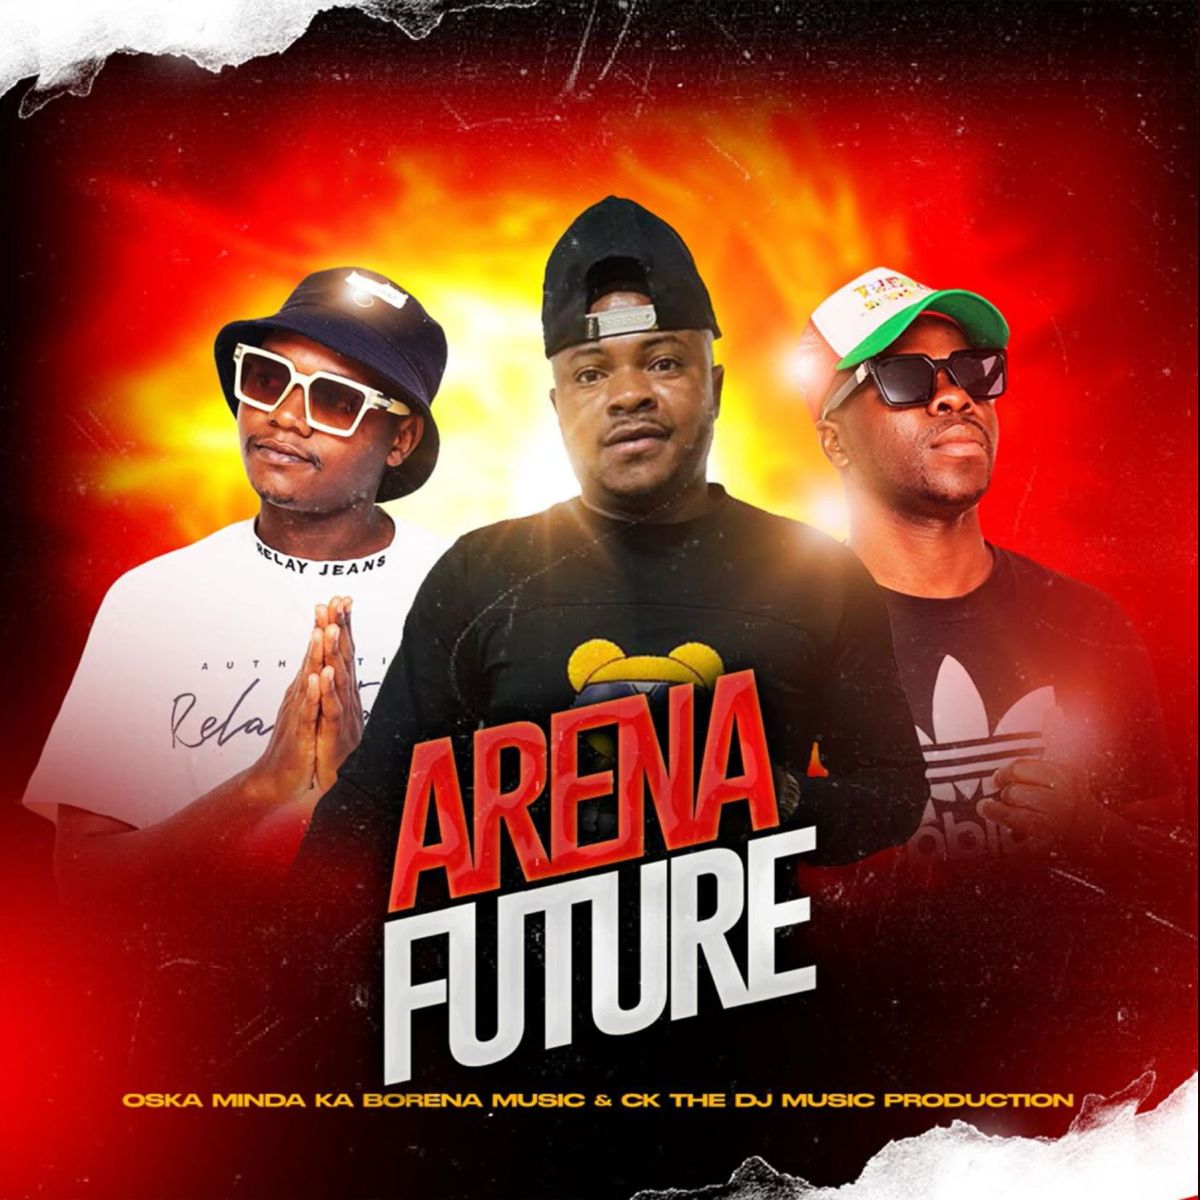 Ck The Dj - Arena Future Ft. Oska Minda Ka Borena Music 1